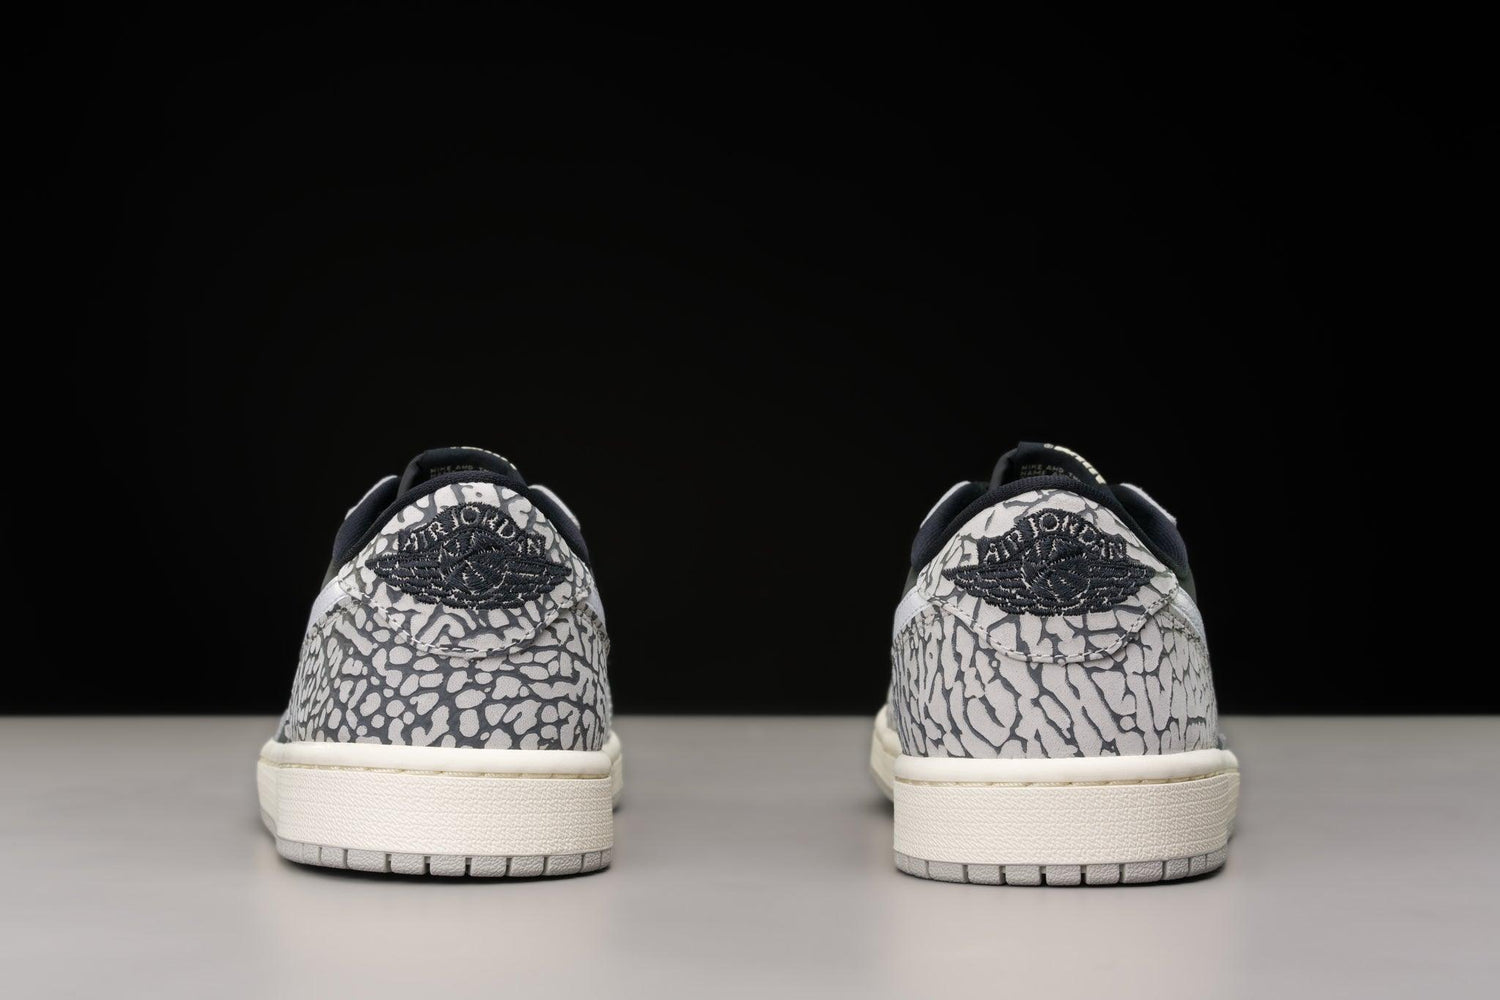 Jordan Sneakers 1 Retro Low OG Black Cement (Women's) - Urlfreeze Shop